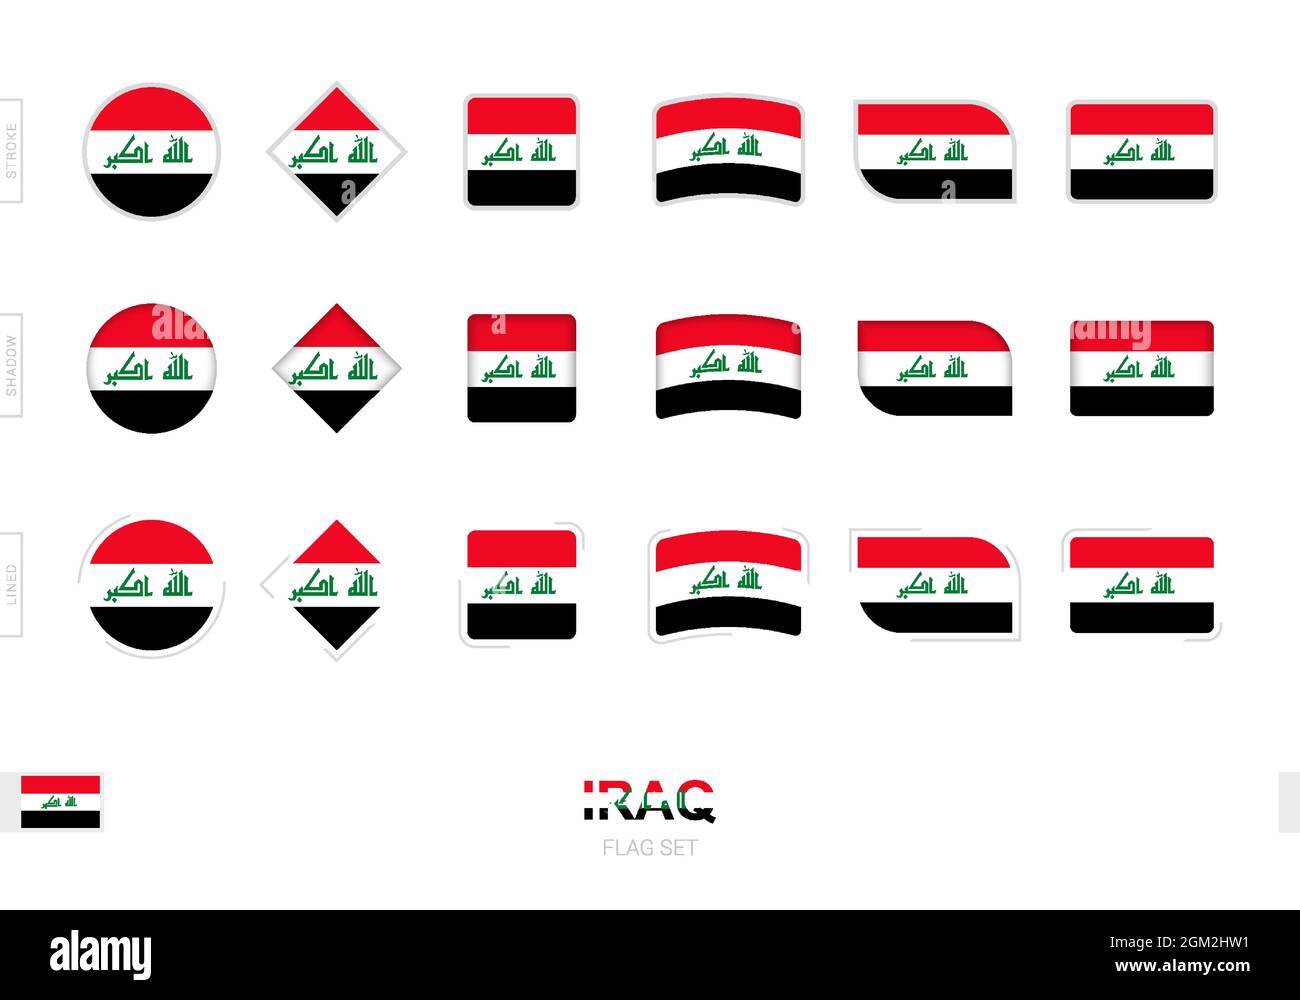 Irak-Flagge gesetzt, einfache Flaggen des Irak mit drei verschiedenen Effekten. Vektorgrafik. Stock Vektor